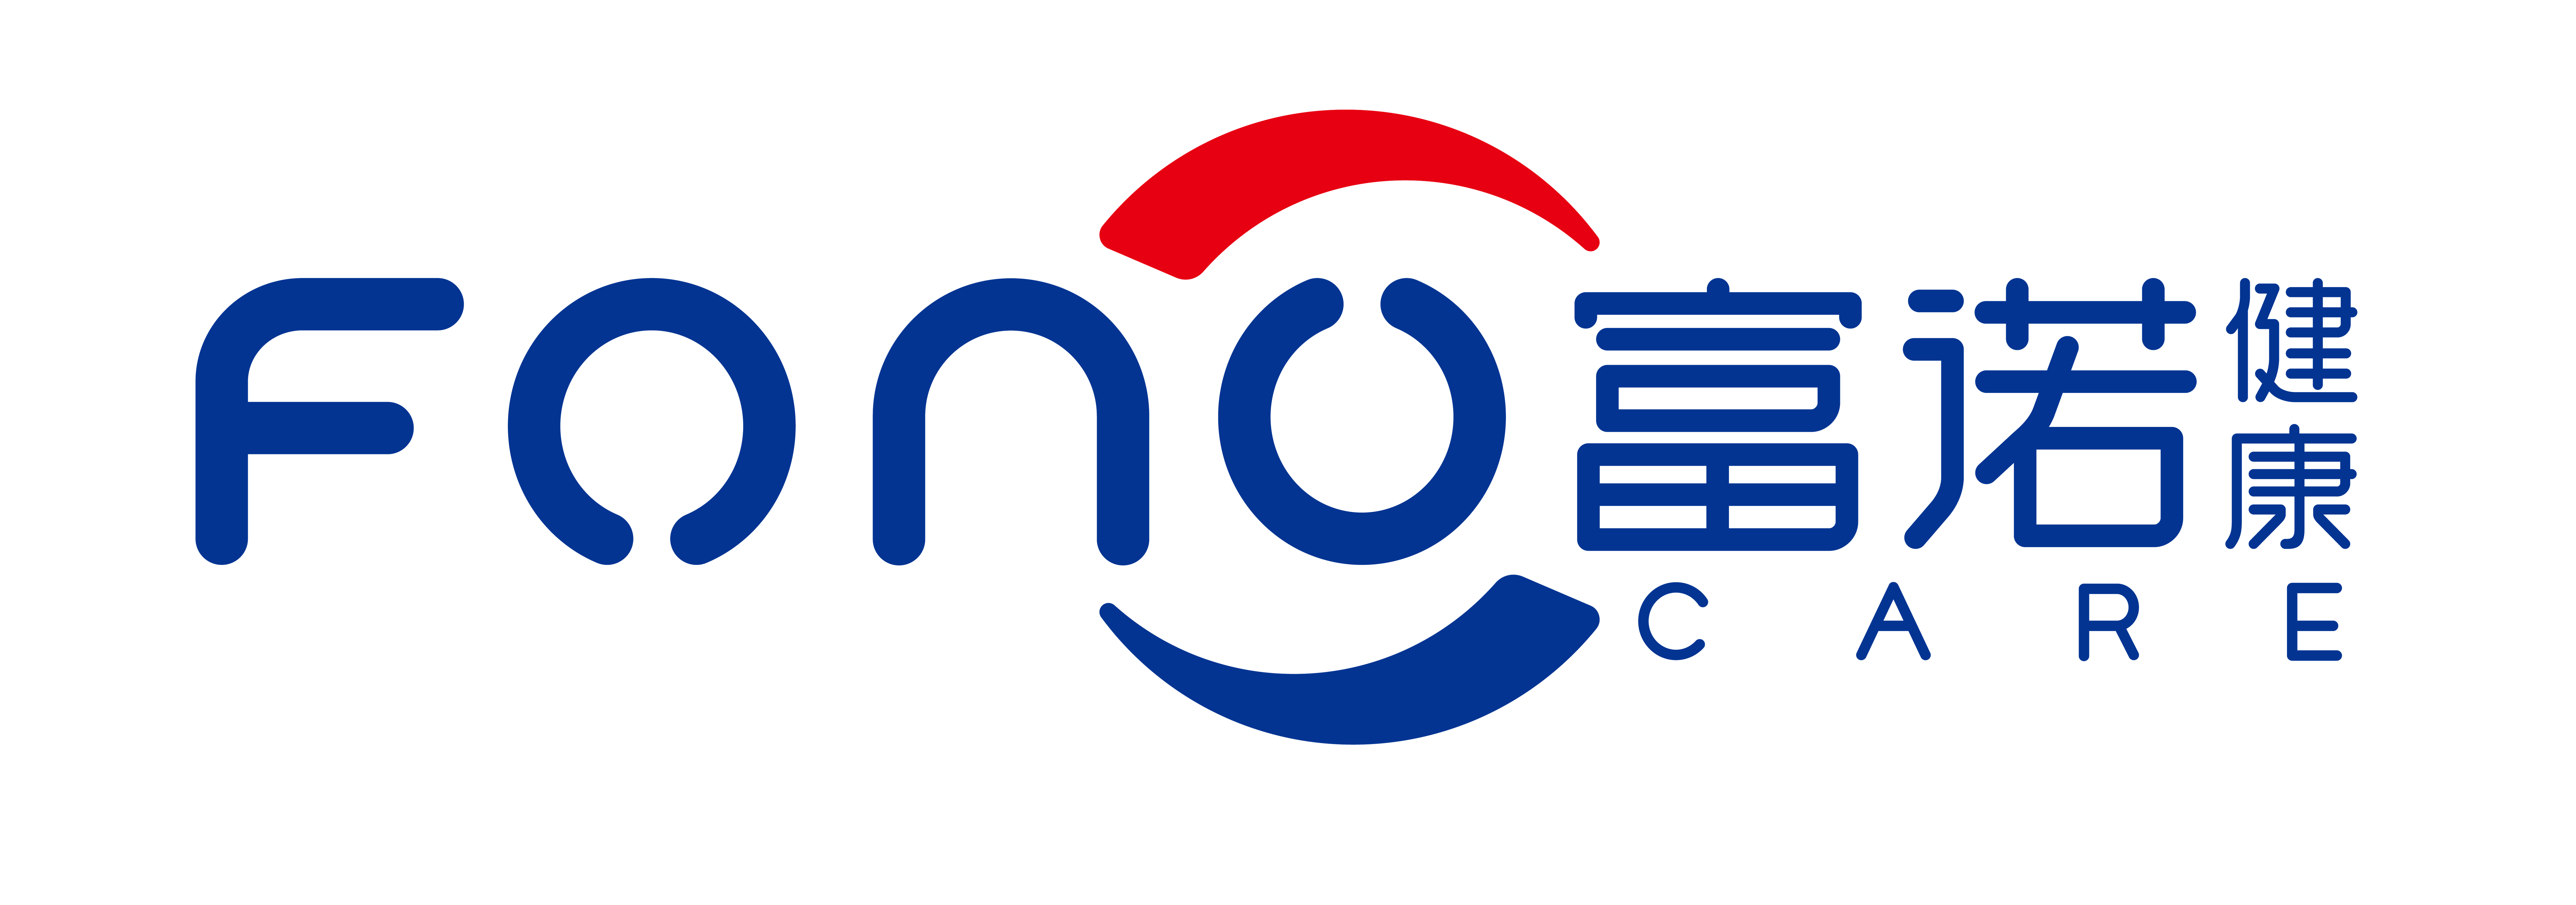 富諾新logo(確認版)-01.png